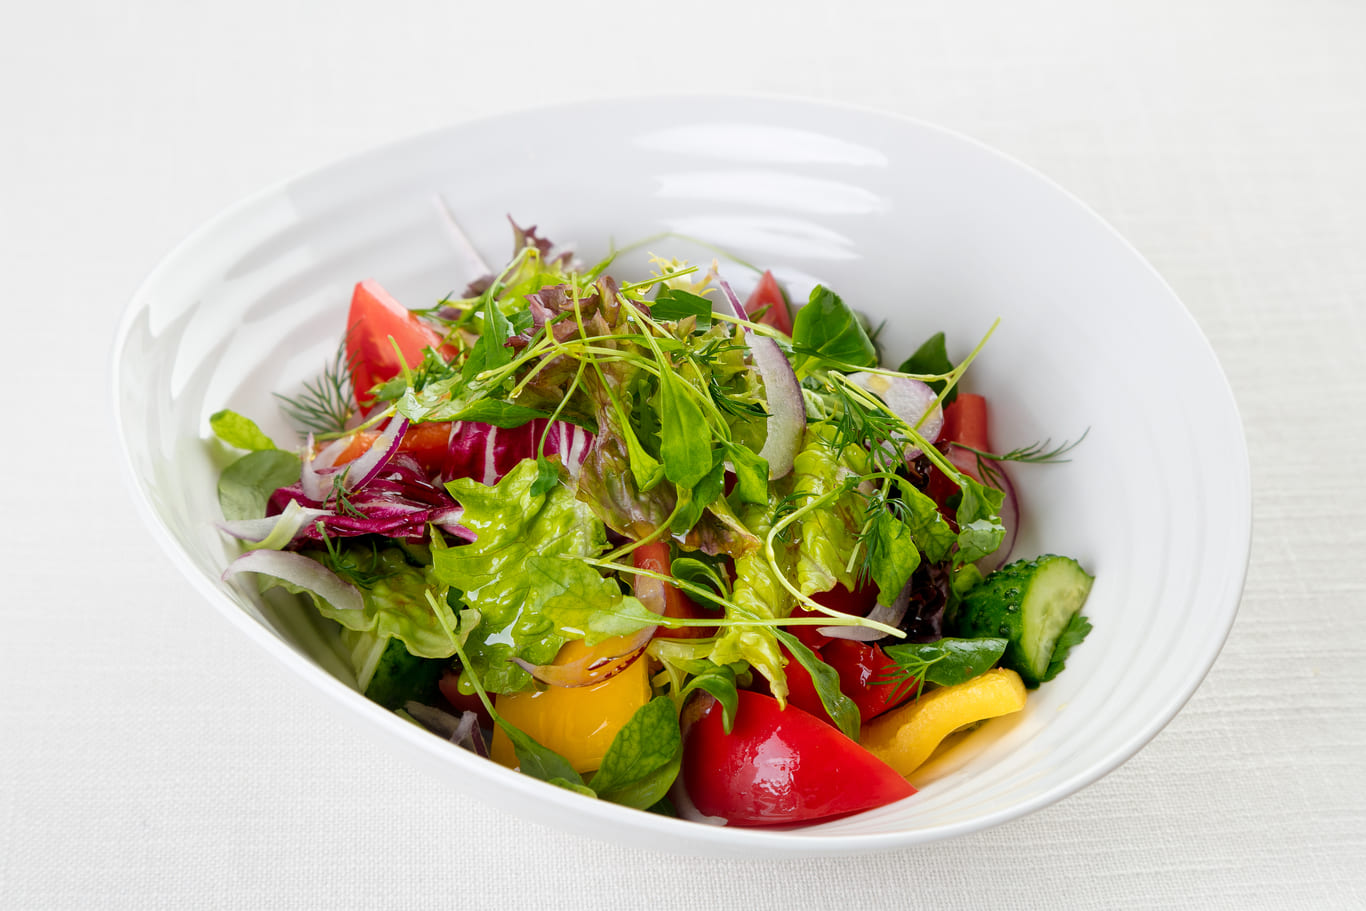 Домашний овощной салат